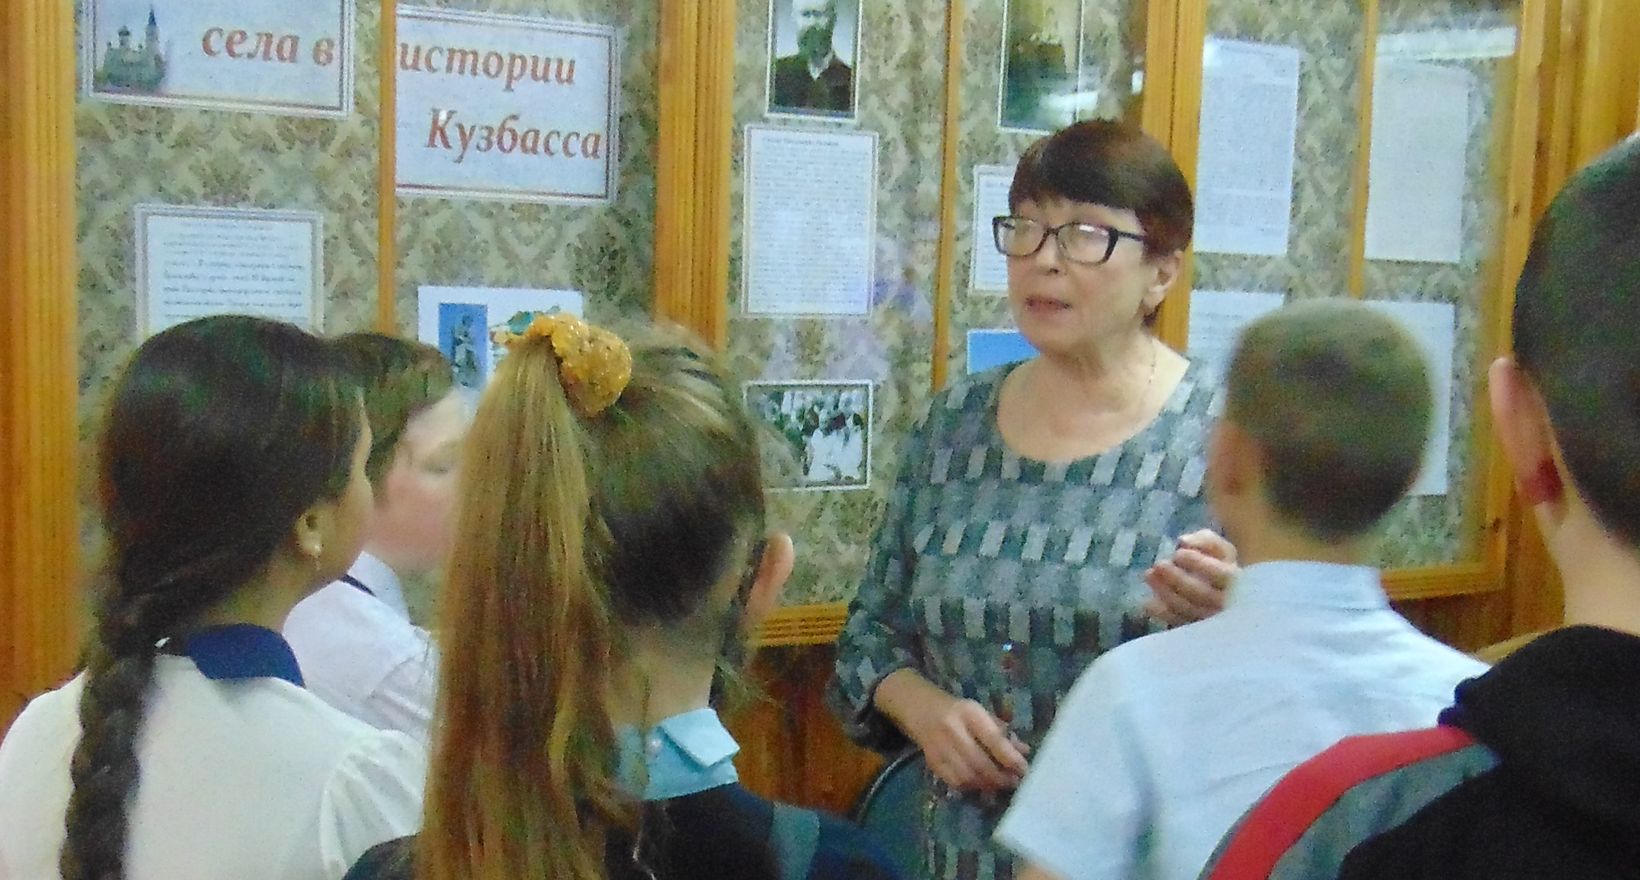 Выставка"История села в истории Кузбасса"